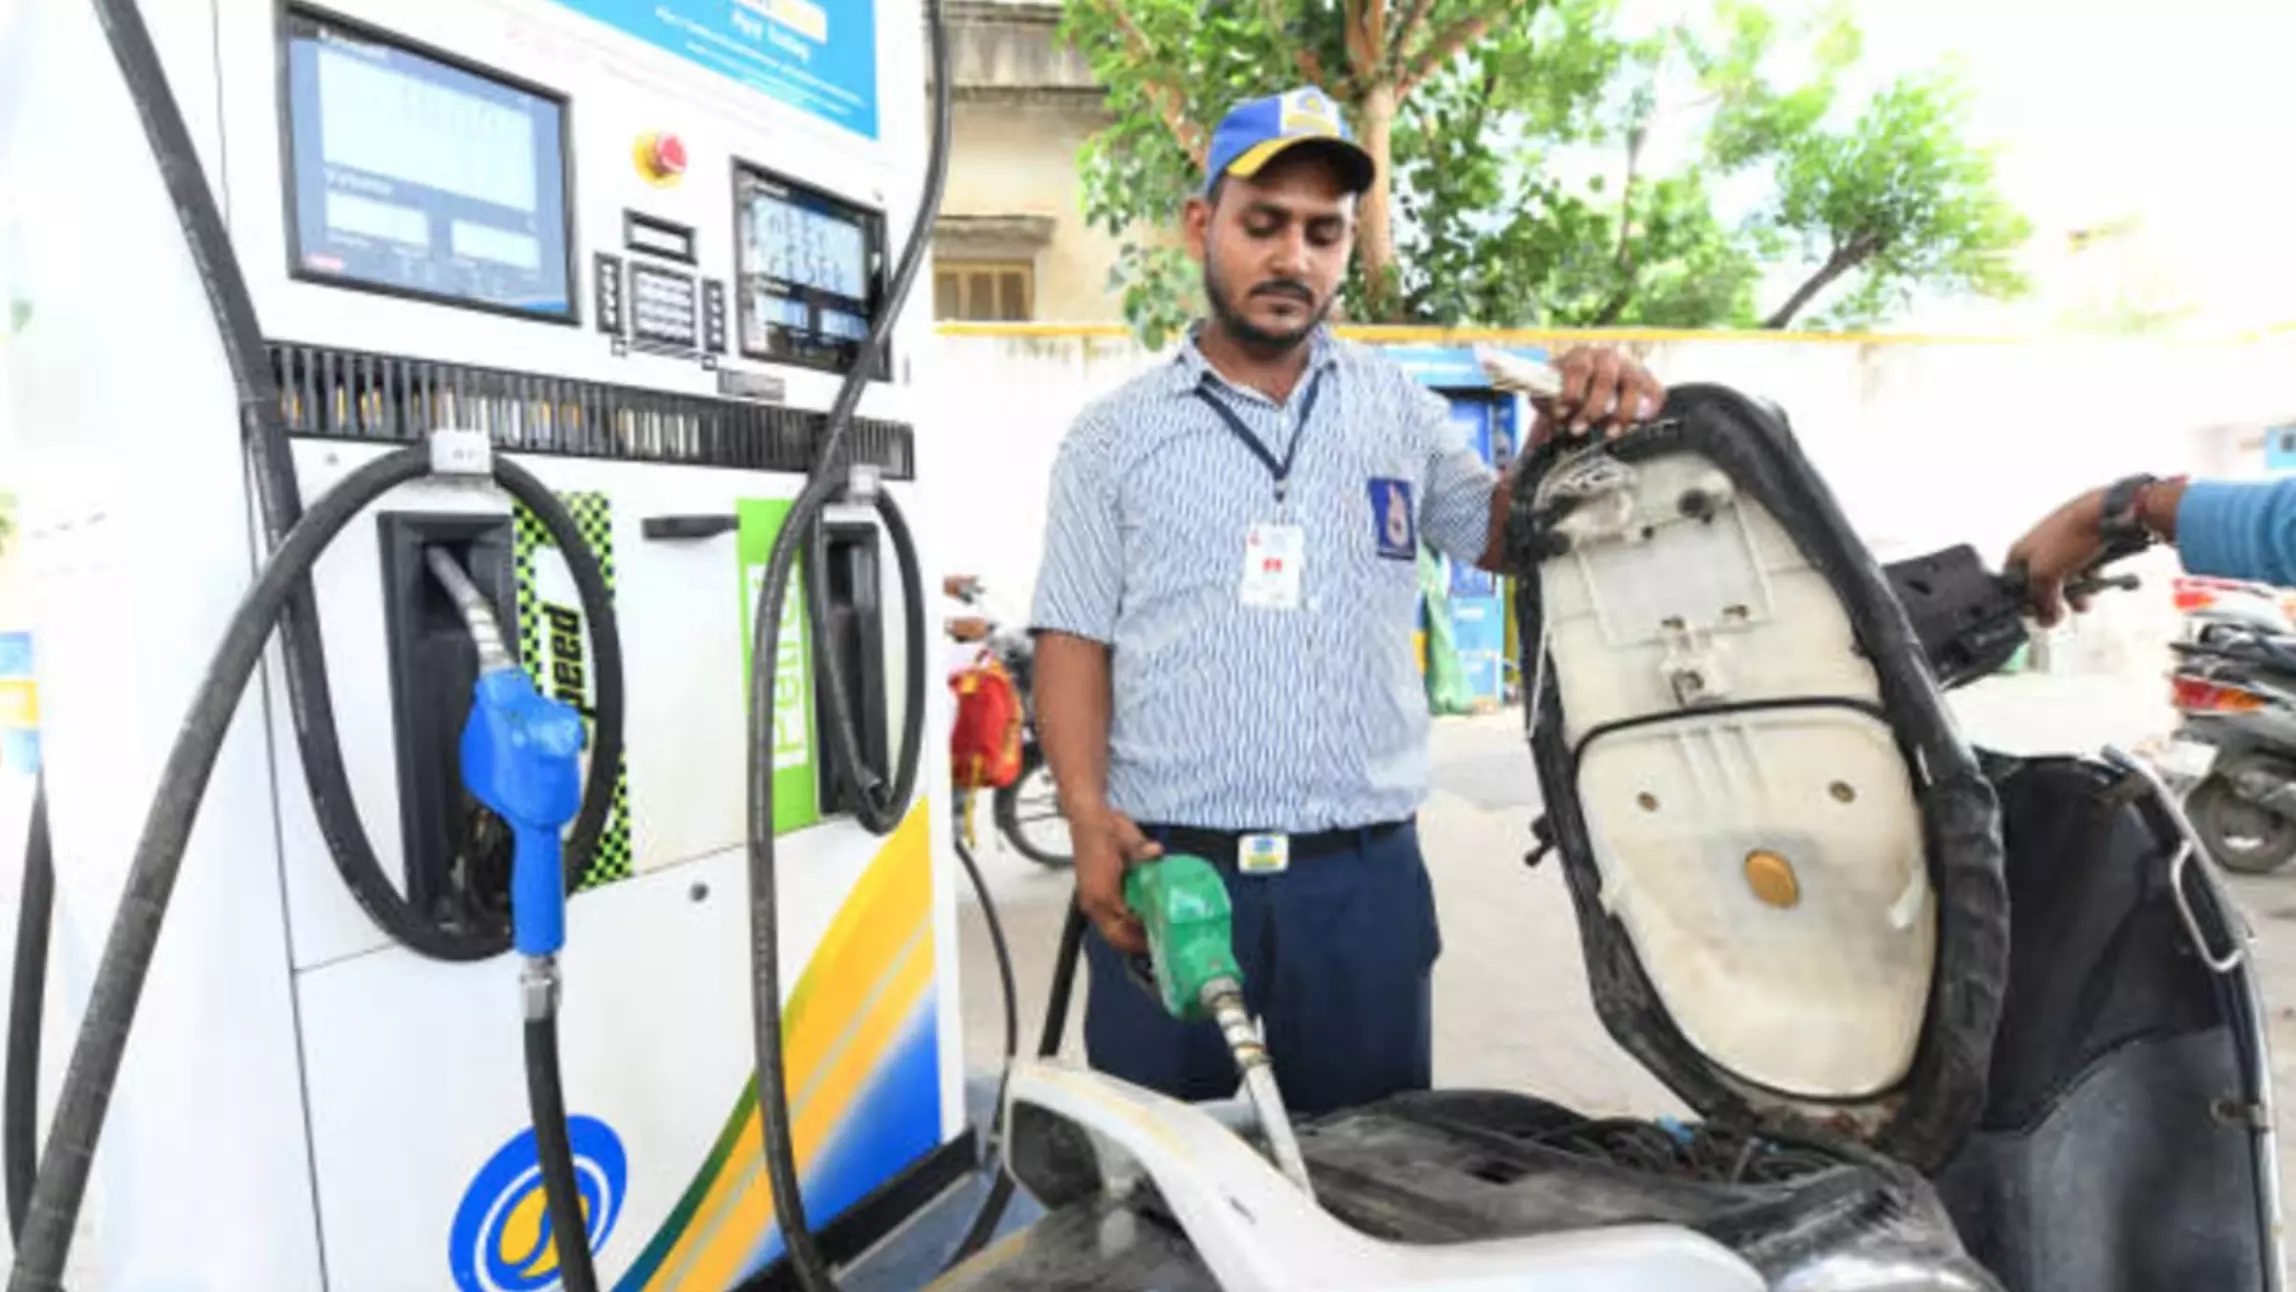 Petrol Diesel Price : यूपी, महाराष्ट्र समेत देश के कई राज्यों में पेट्रोल-डीजल हुआ महंगा, जानिए- आपके शहर में क्या है रेट?